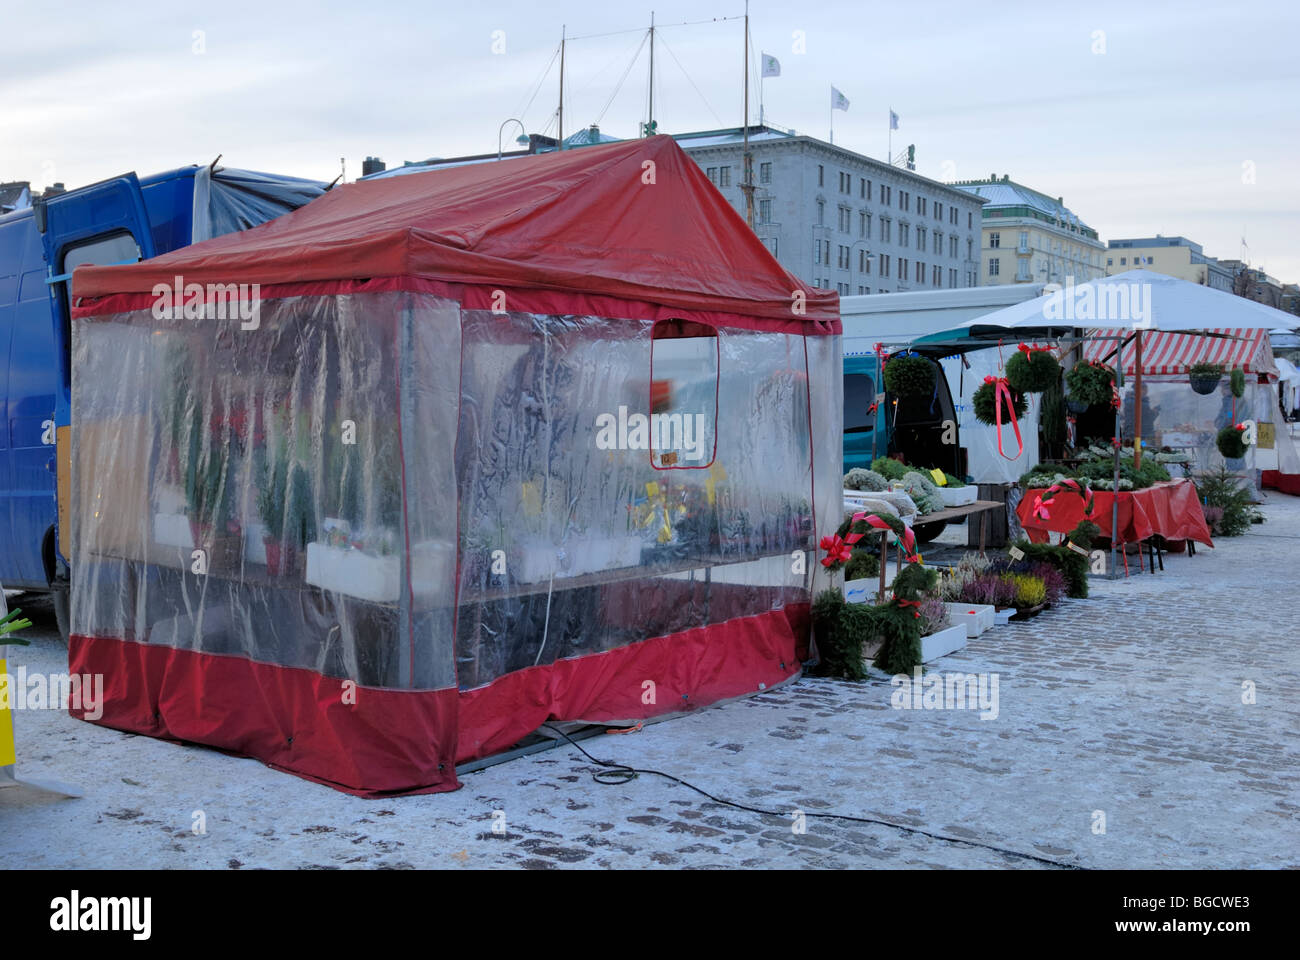 Einen dampfenden Blume Lieferanten Zelt Stand auf dem Marktplatz von  Helsinki im Winter. Helsinki, Finnland, Skandinavien, Europa  Stockfotografie - Alamy